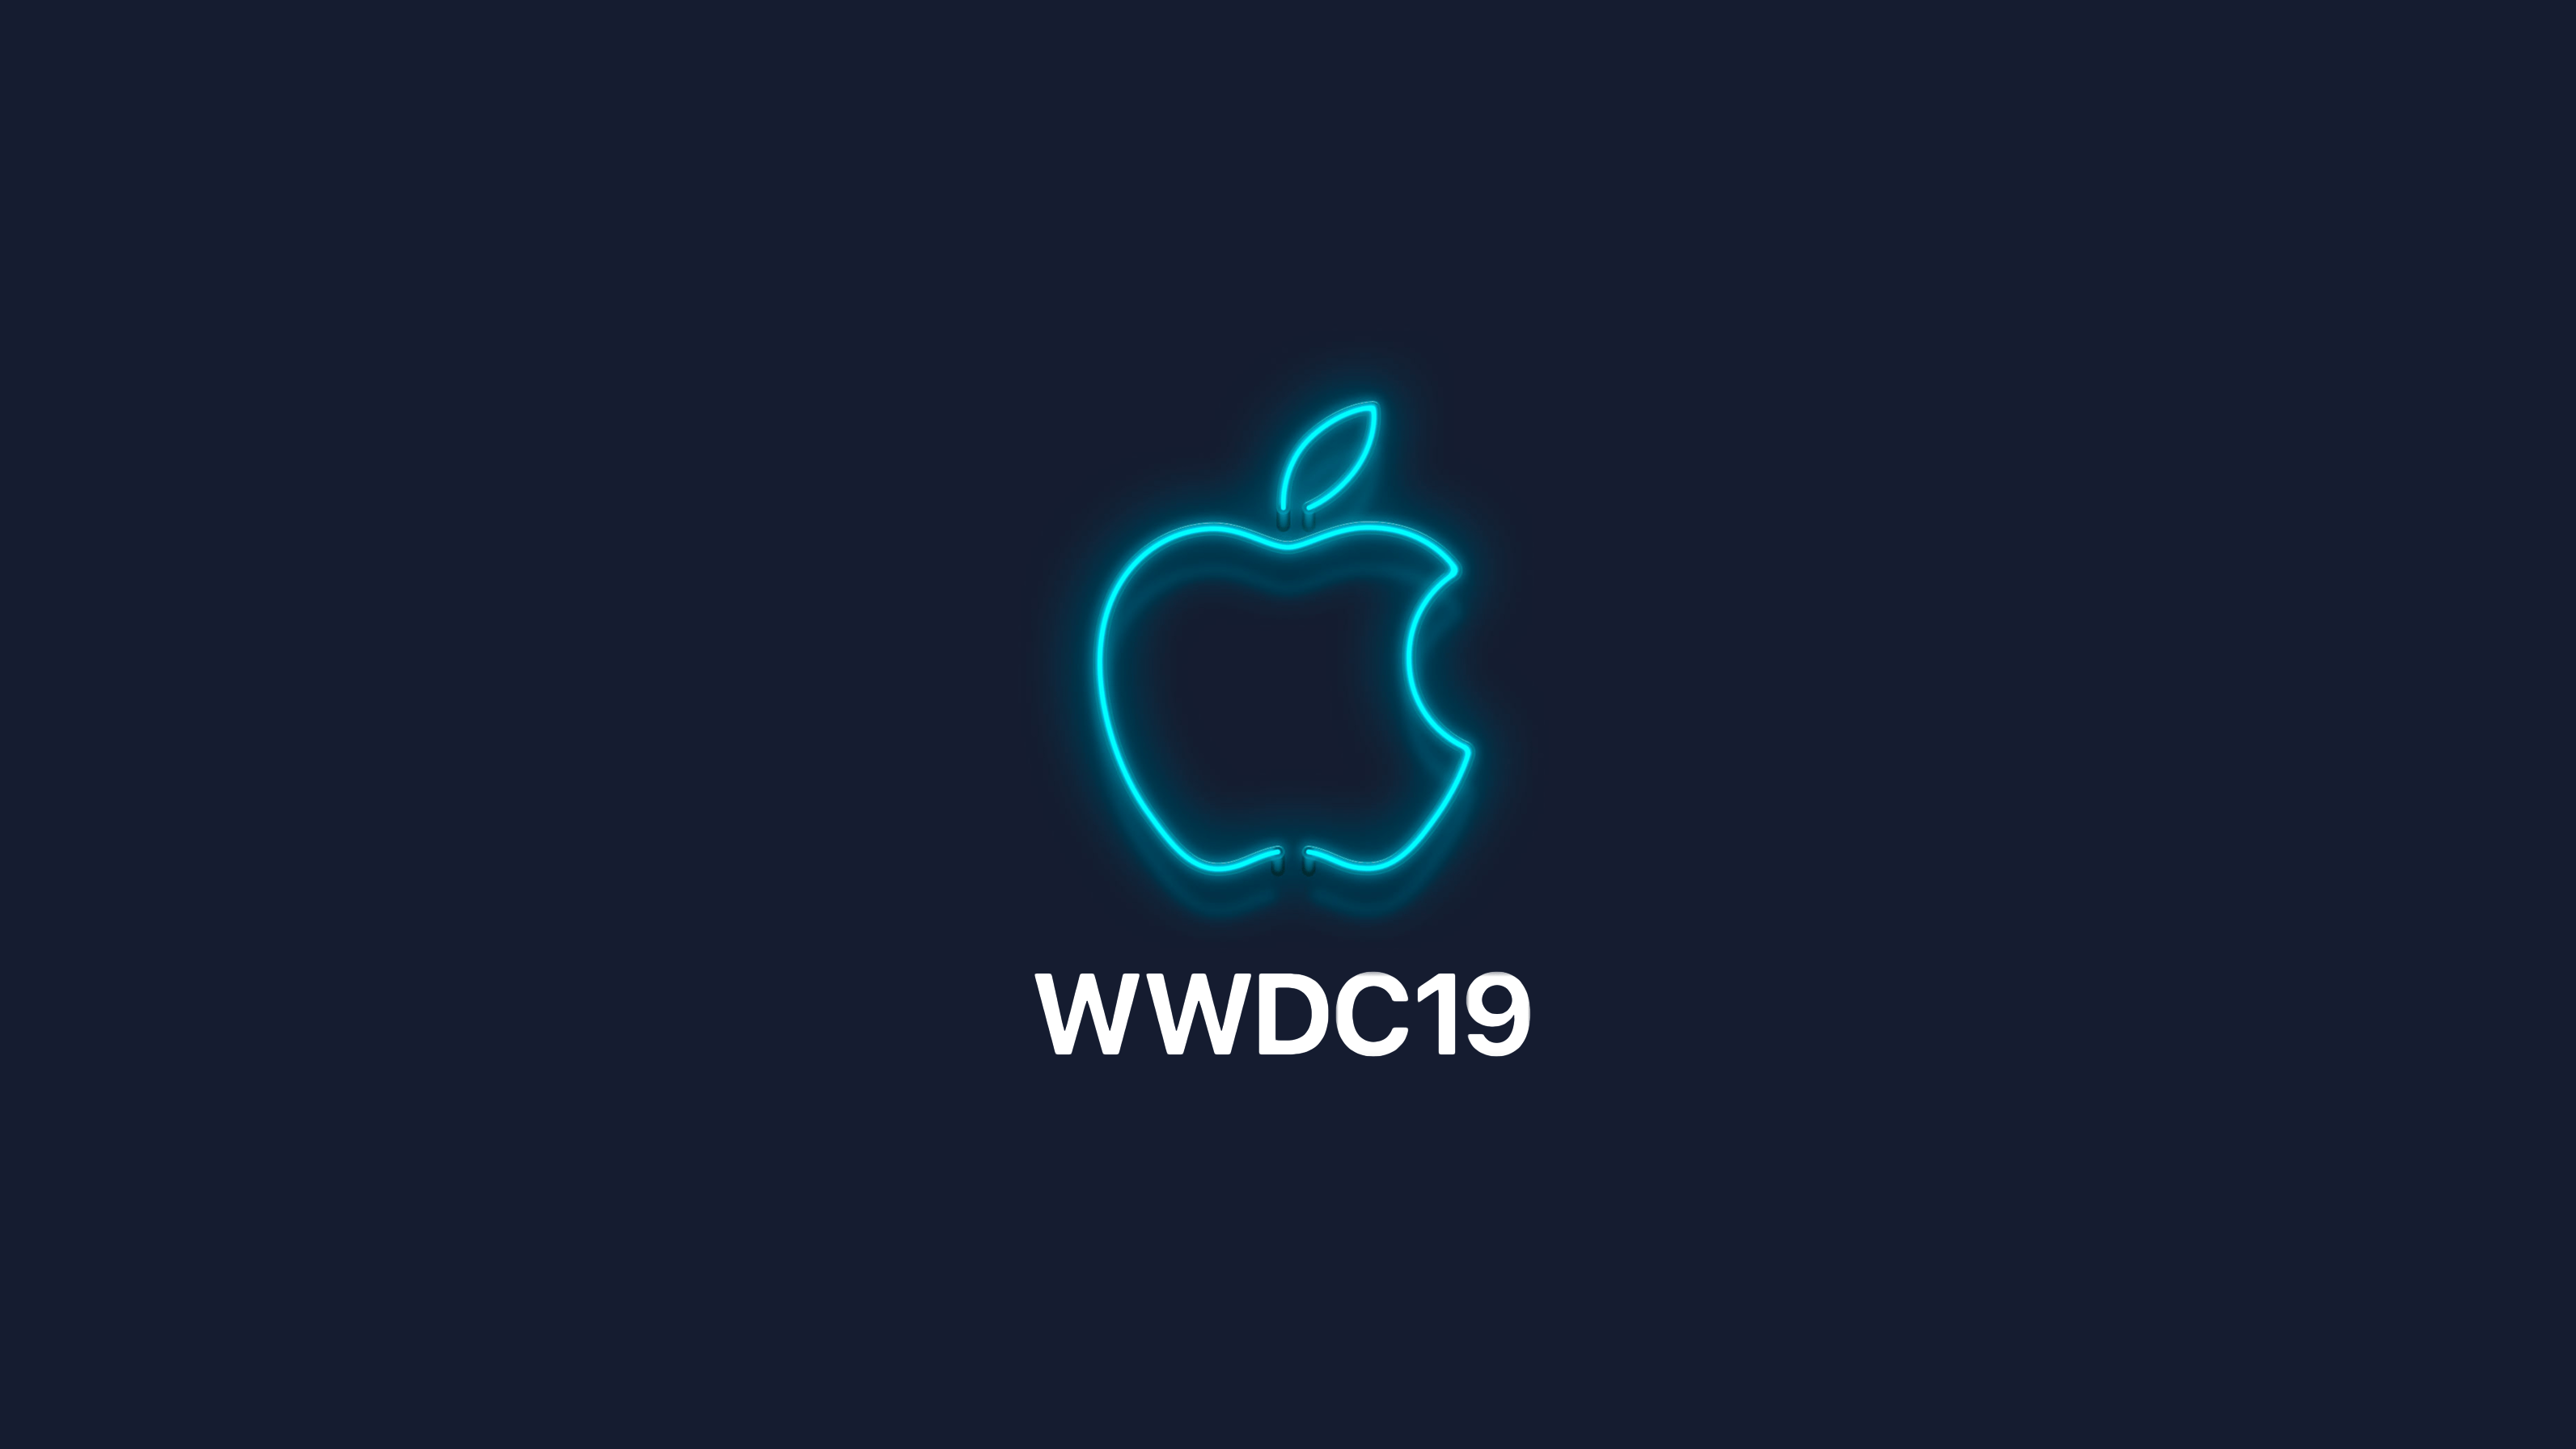 WWDC19